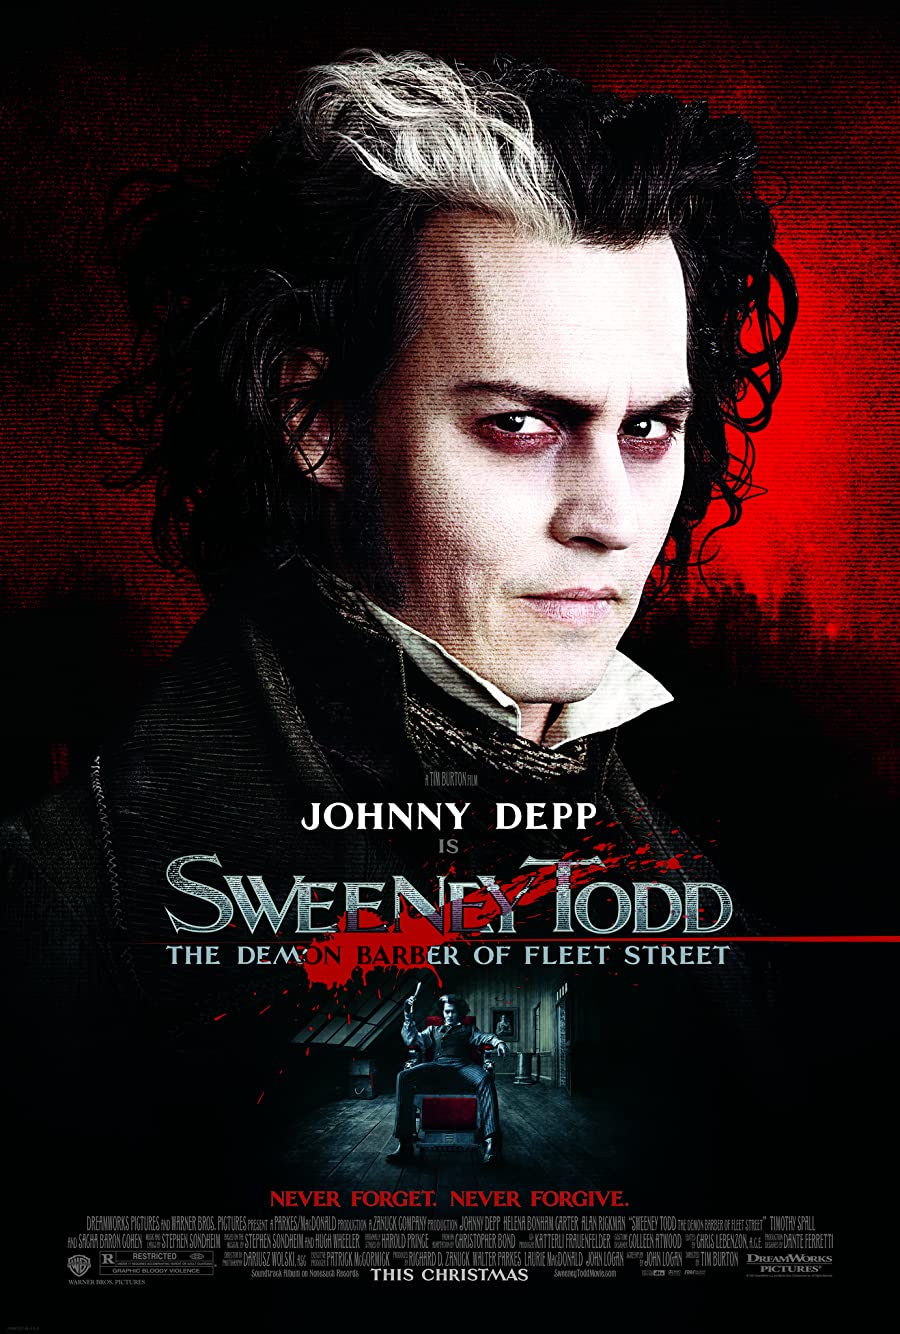 Sweeney Todd – The Demon Barber of Fleet Street